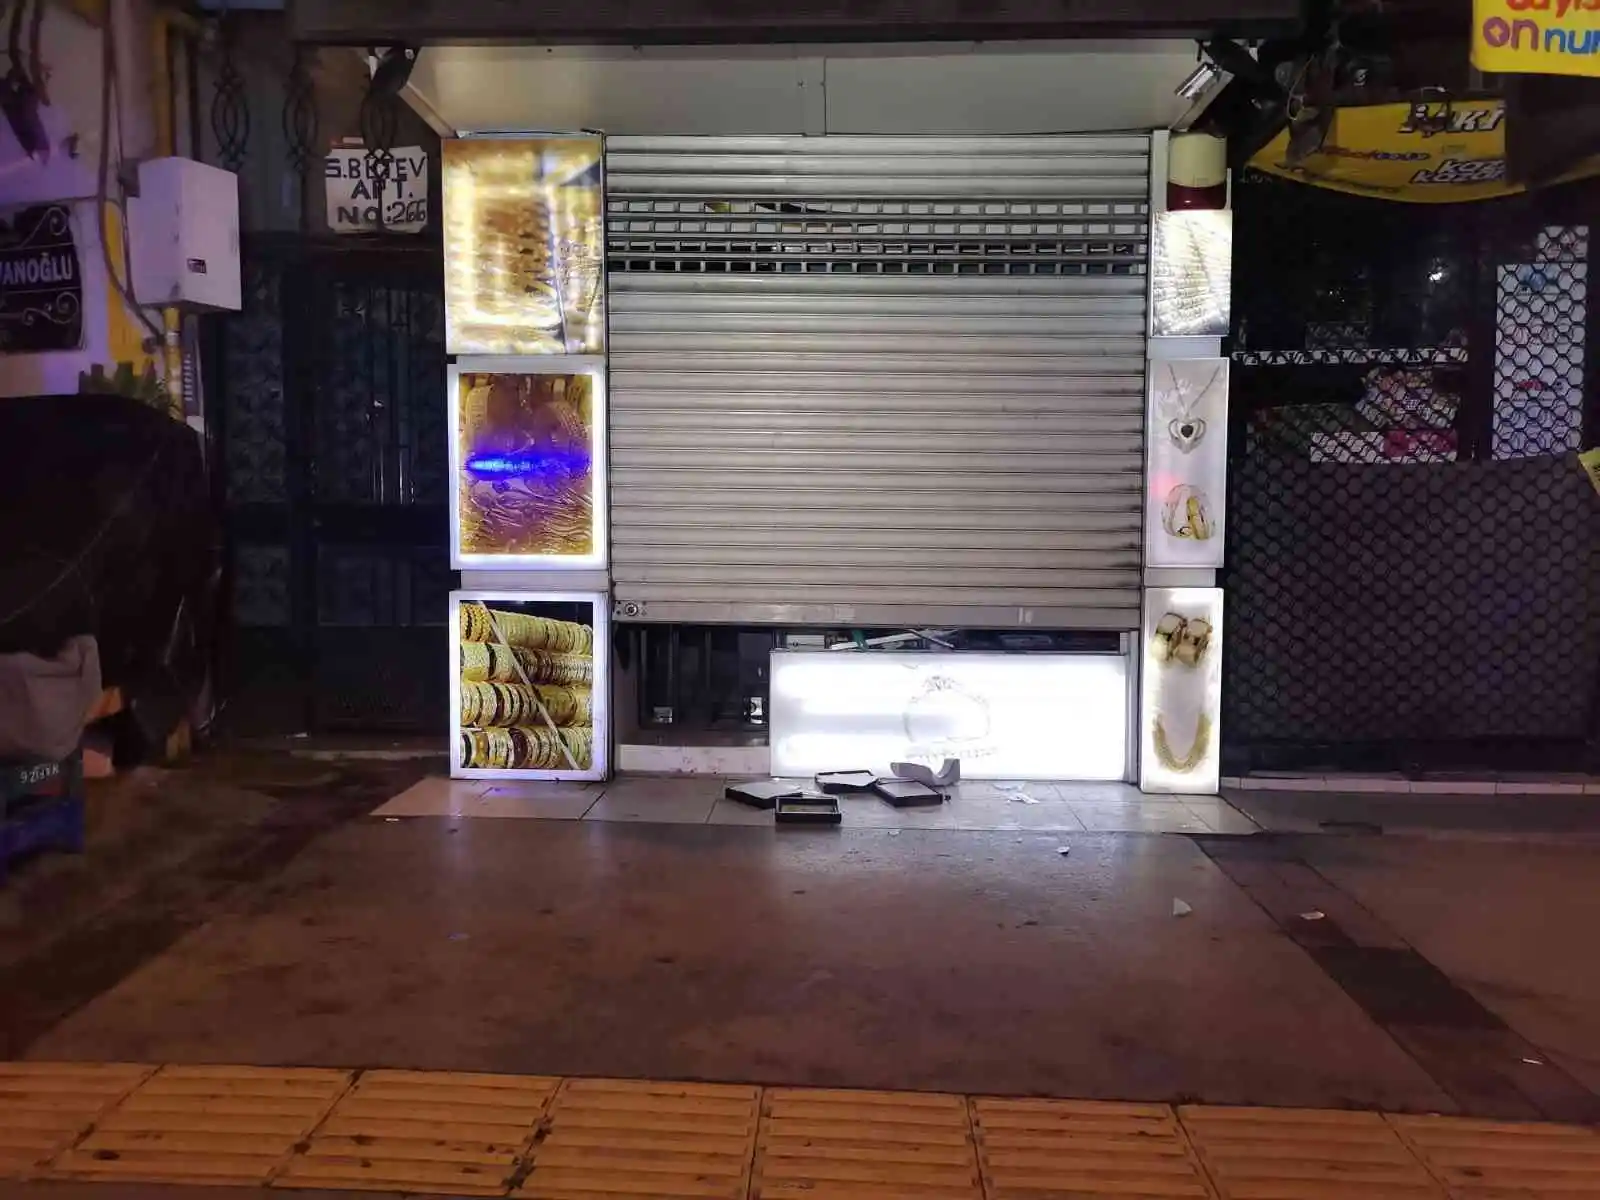 İzmir'de kuyumcu soygunu: 5 bin lira değerinde ziynet eşyası çalındı
